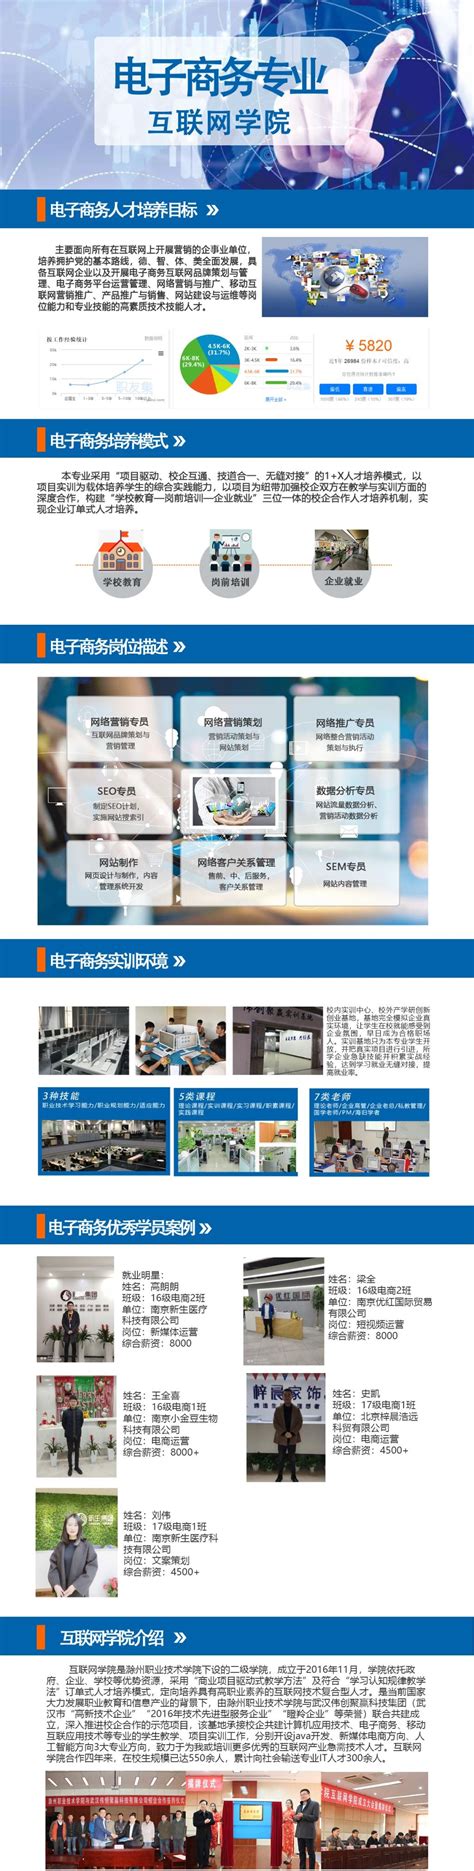 2021年滁州市工业互联网补助政策申报时间、流程和详细要求 - 知乎